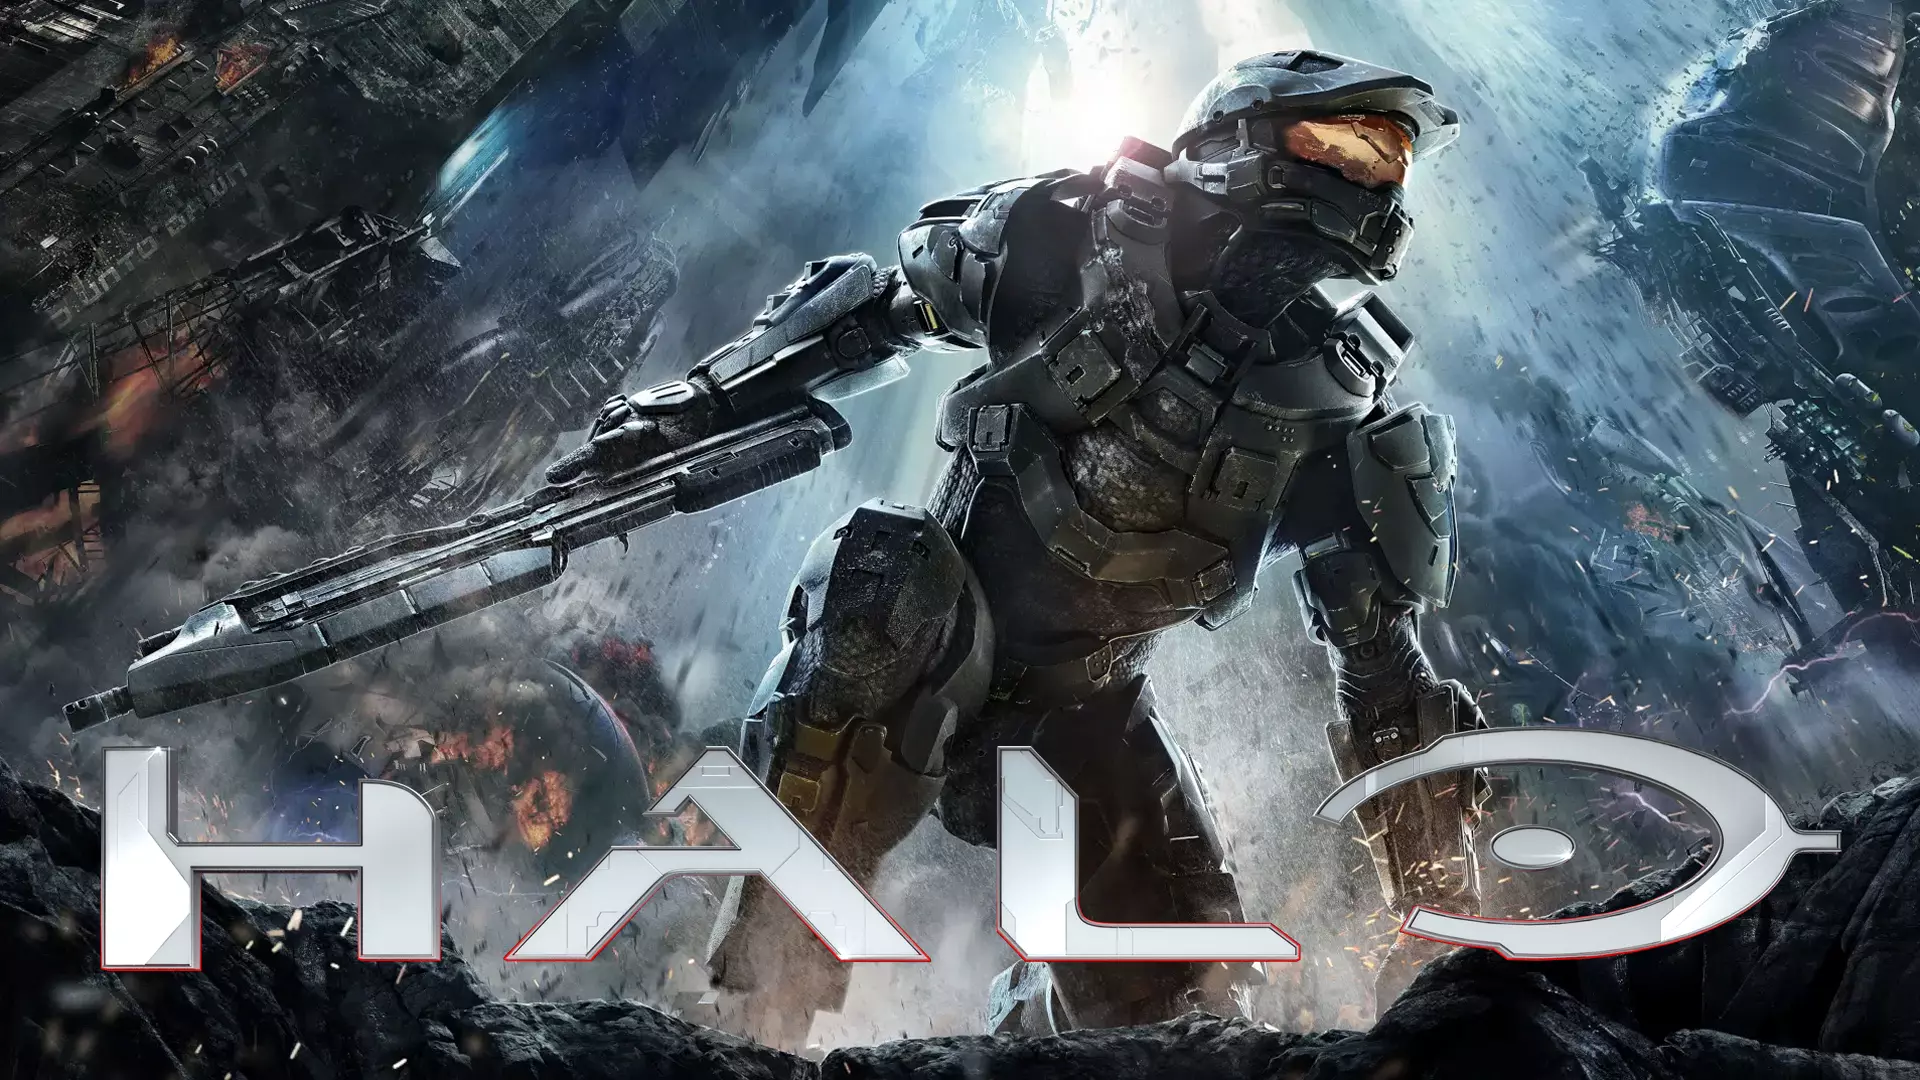 Halo - Série tem segunda temporada anunciada pelo Paramount+